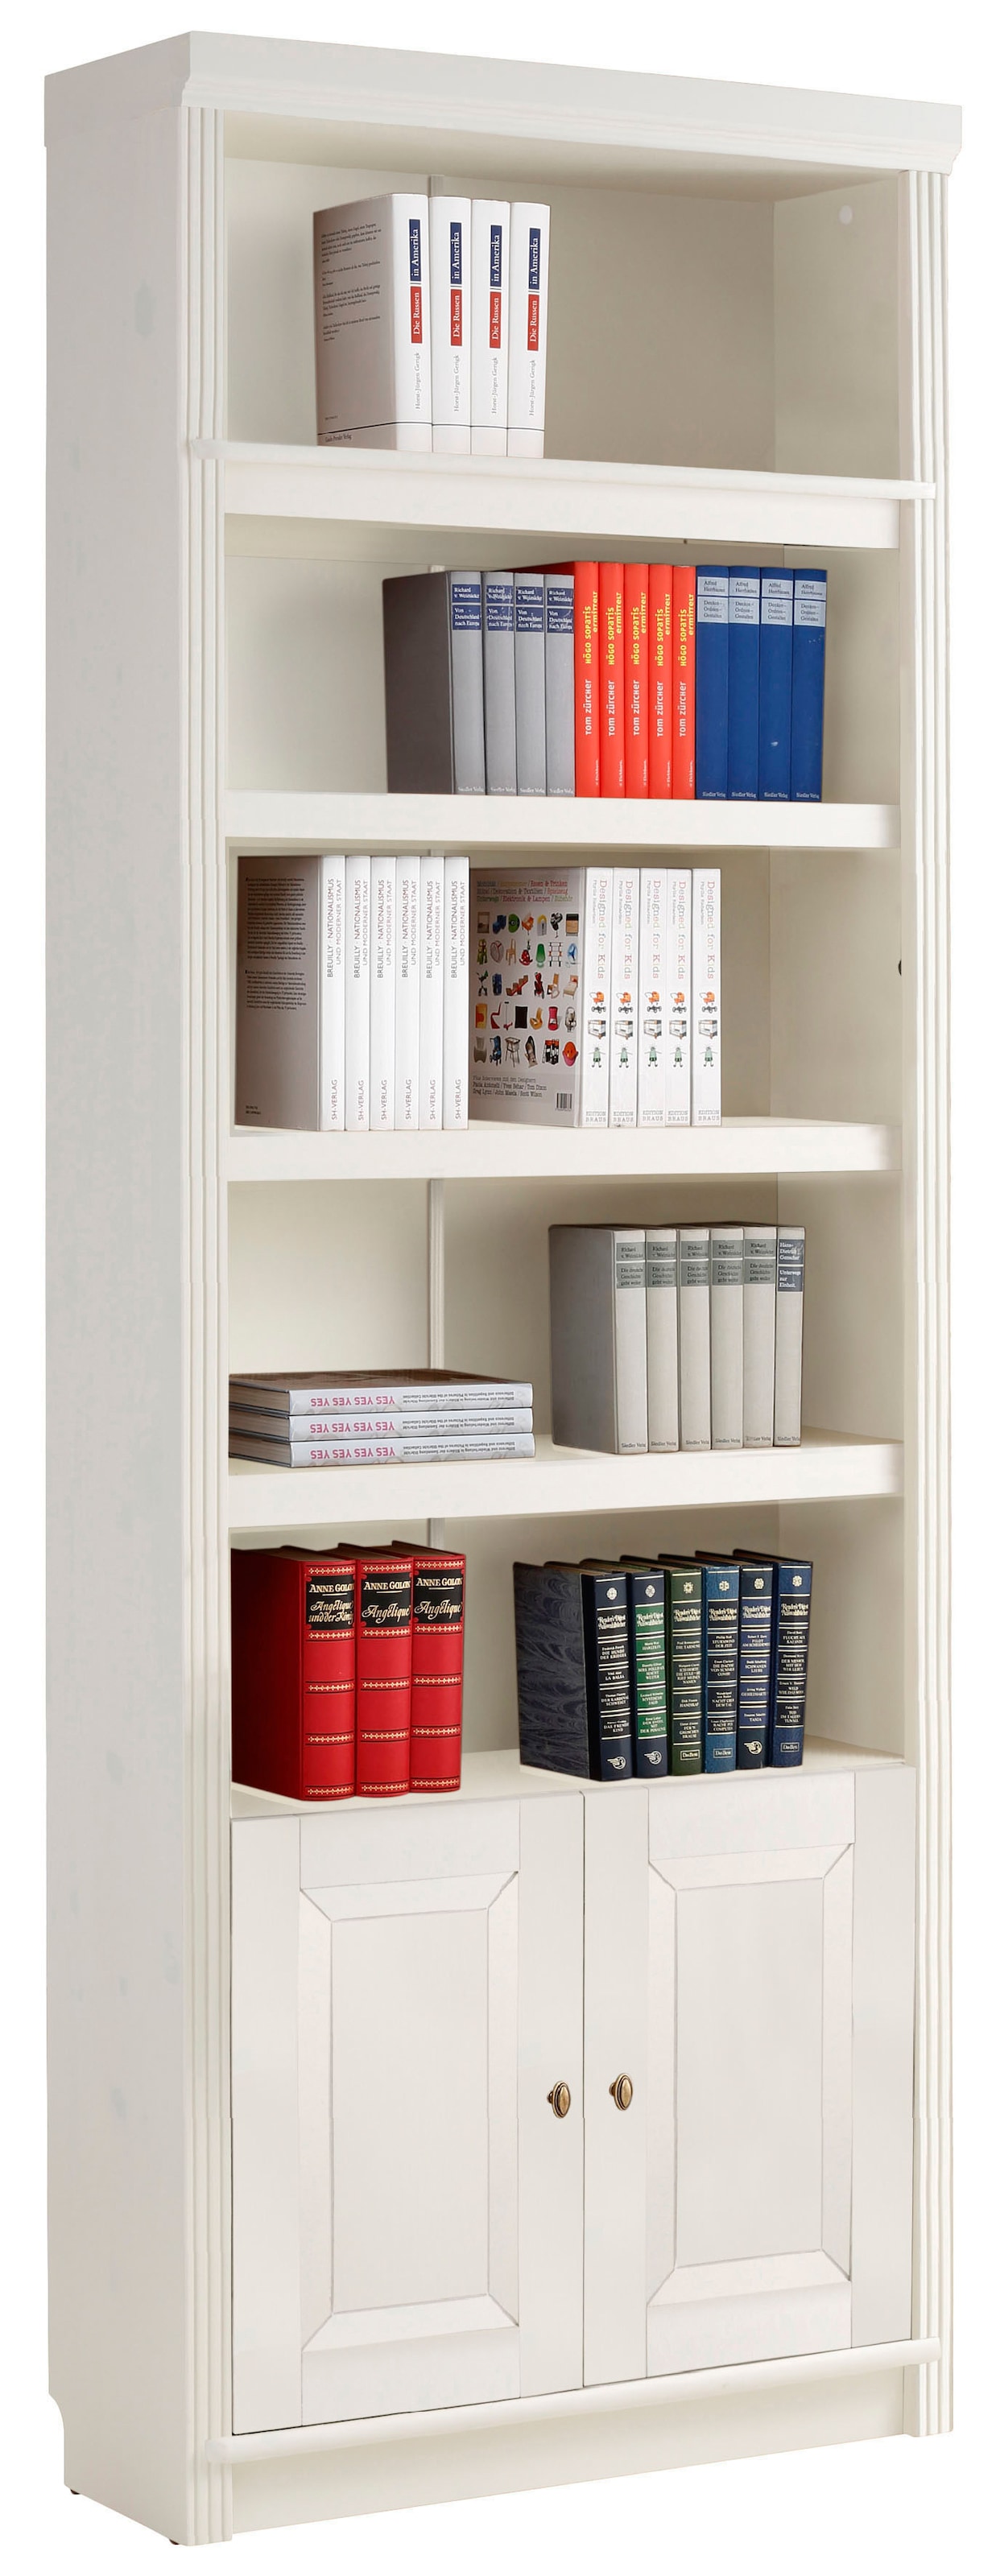 Ackermann | Tipps Auswahl Bücherregal: zur